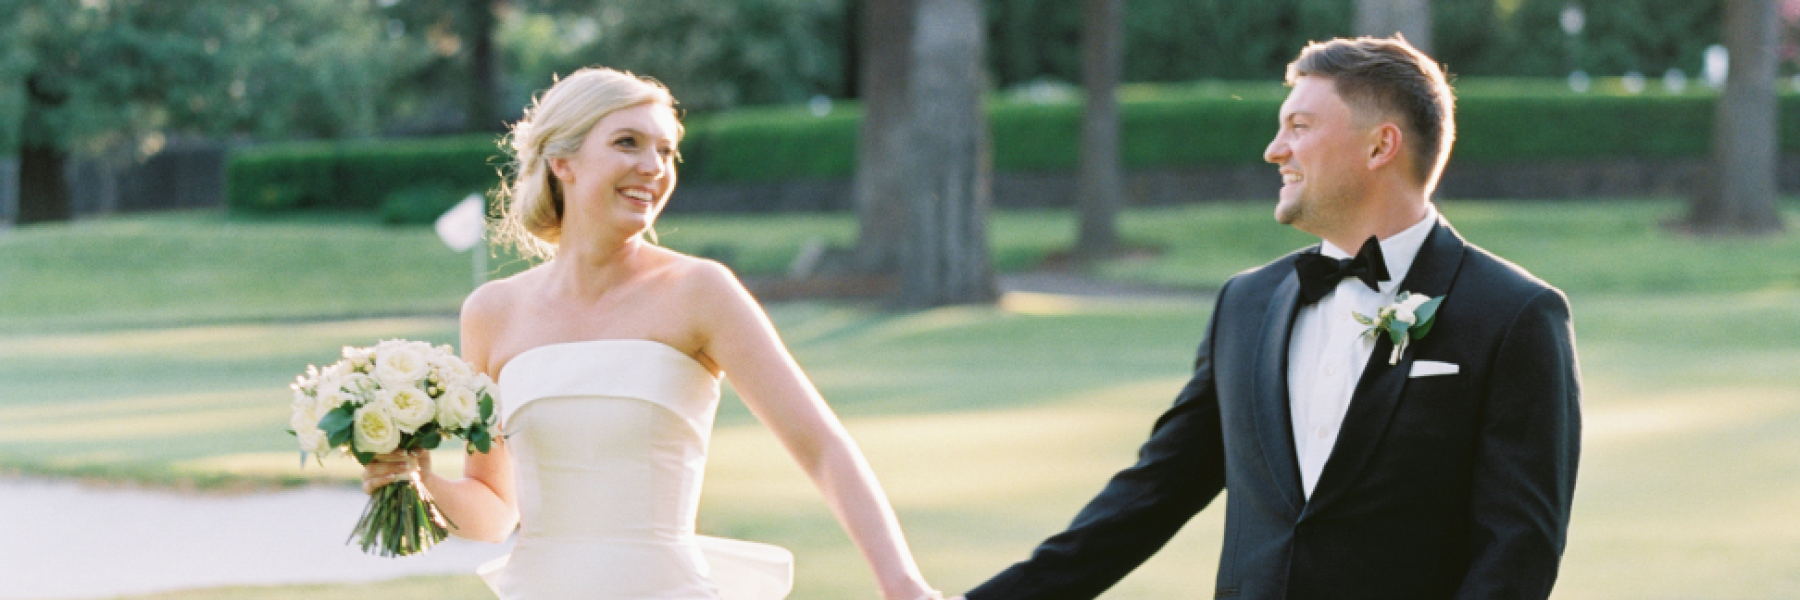 bride & groom at golf club wedding